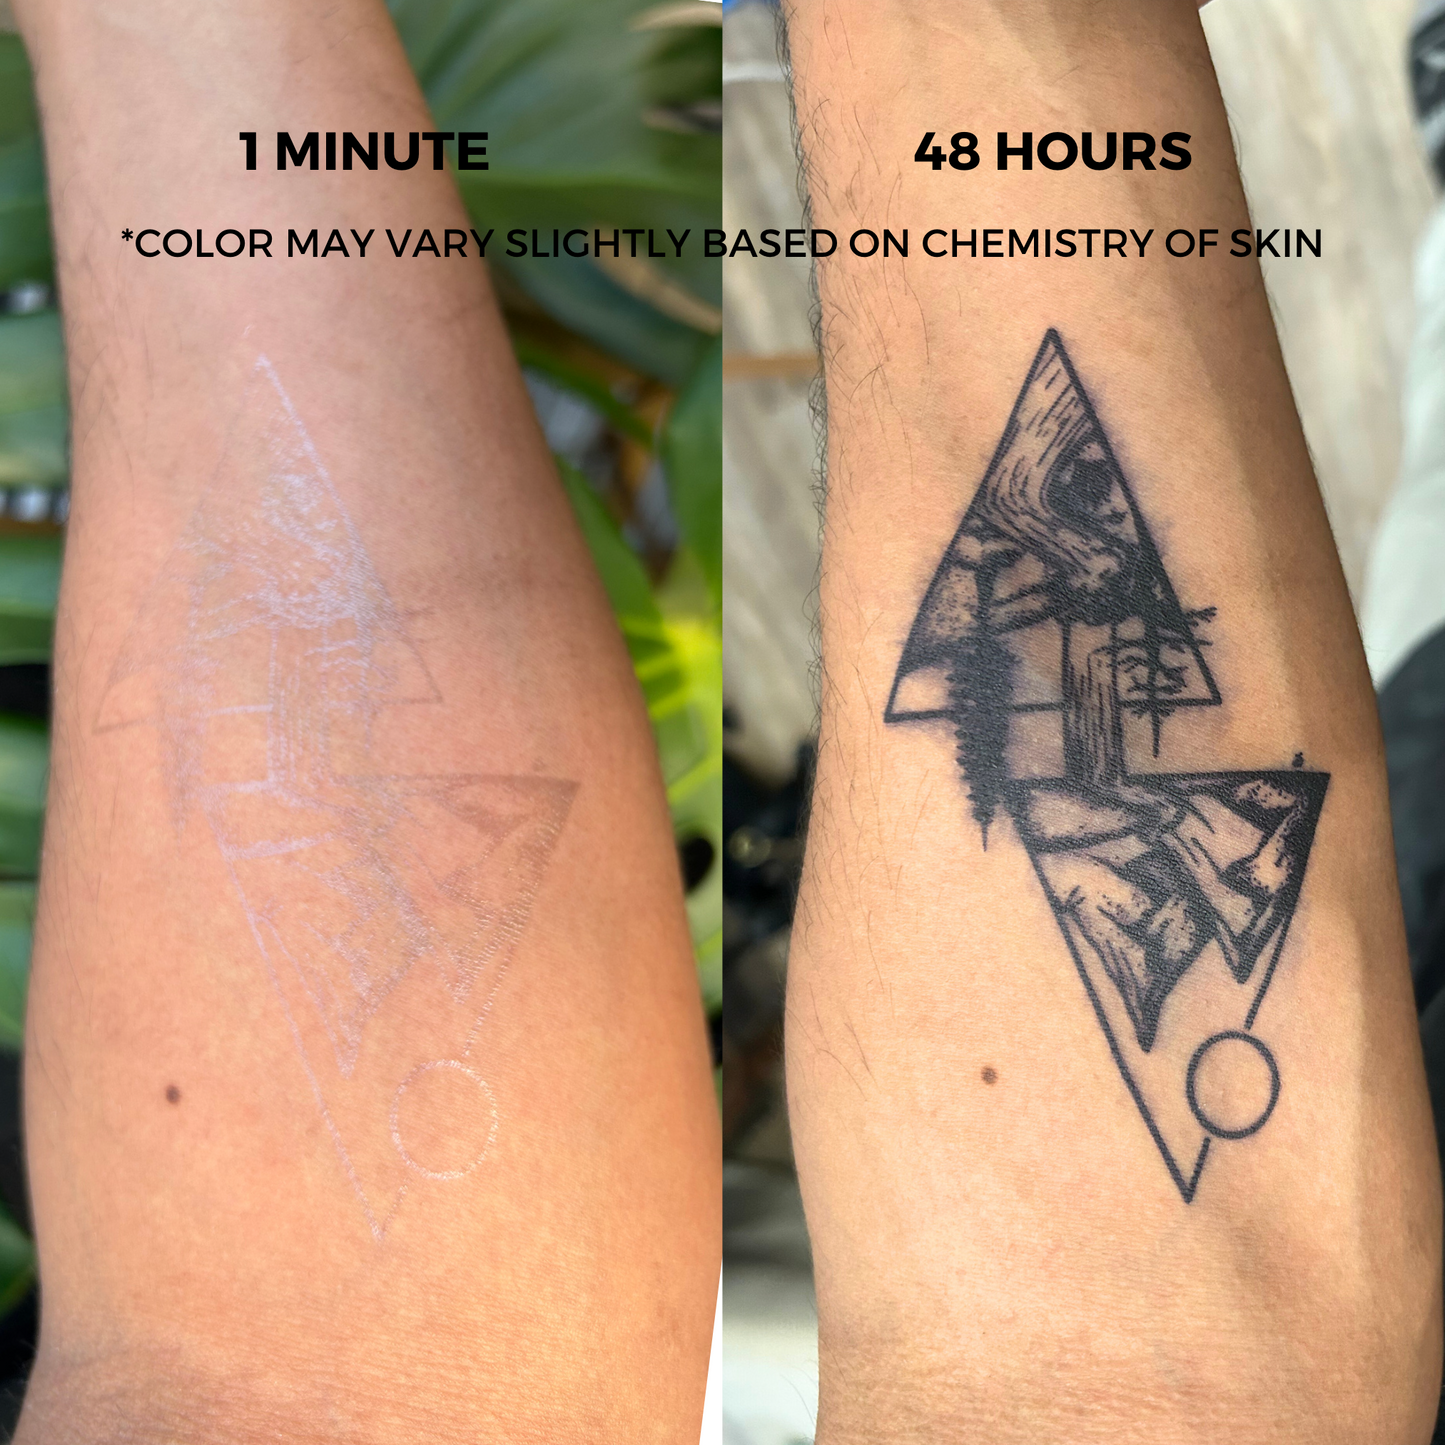 Peace Bird Tattoo | 2 Week Semi Permanent Temporary Tattoo | Plant Based Vegan Tattoo | Spiritual Tattoo | Large Bird Tattoo | Freedom Tattoo | Symbolic Tattoo